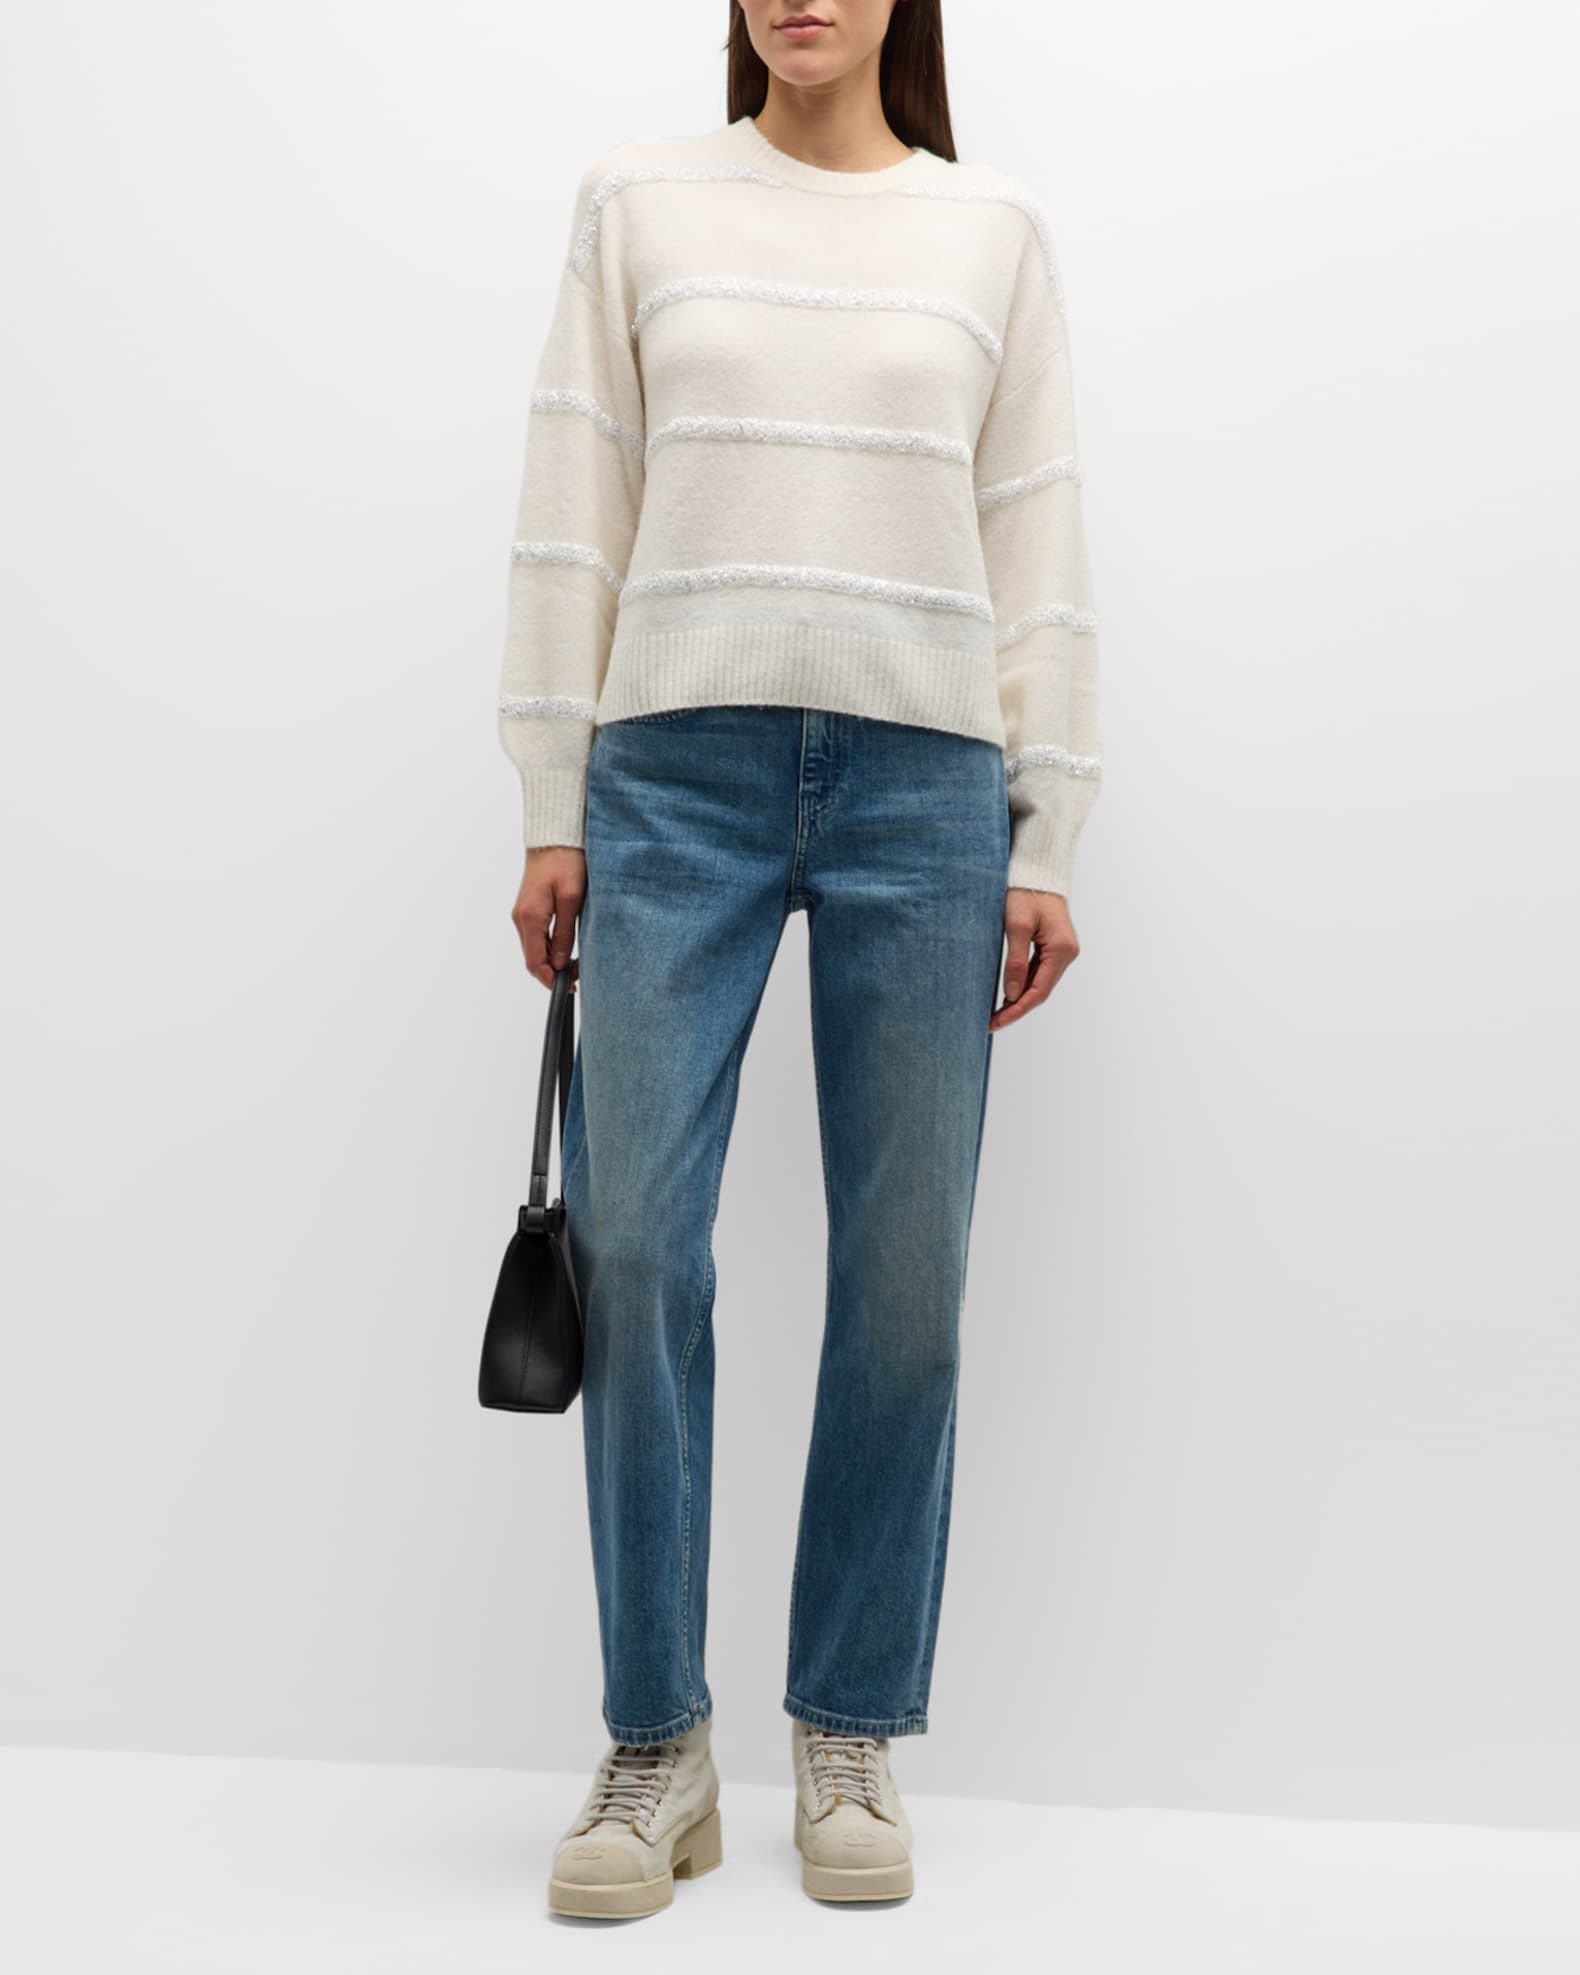 Splendid Rae Sequin Drop-Shoulder Sweater | Neiman Marcus